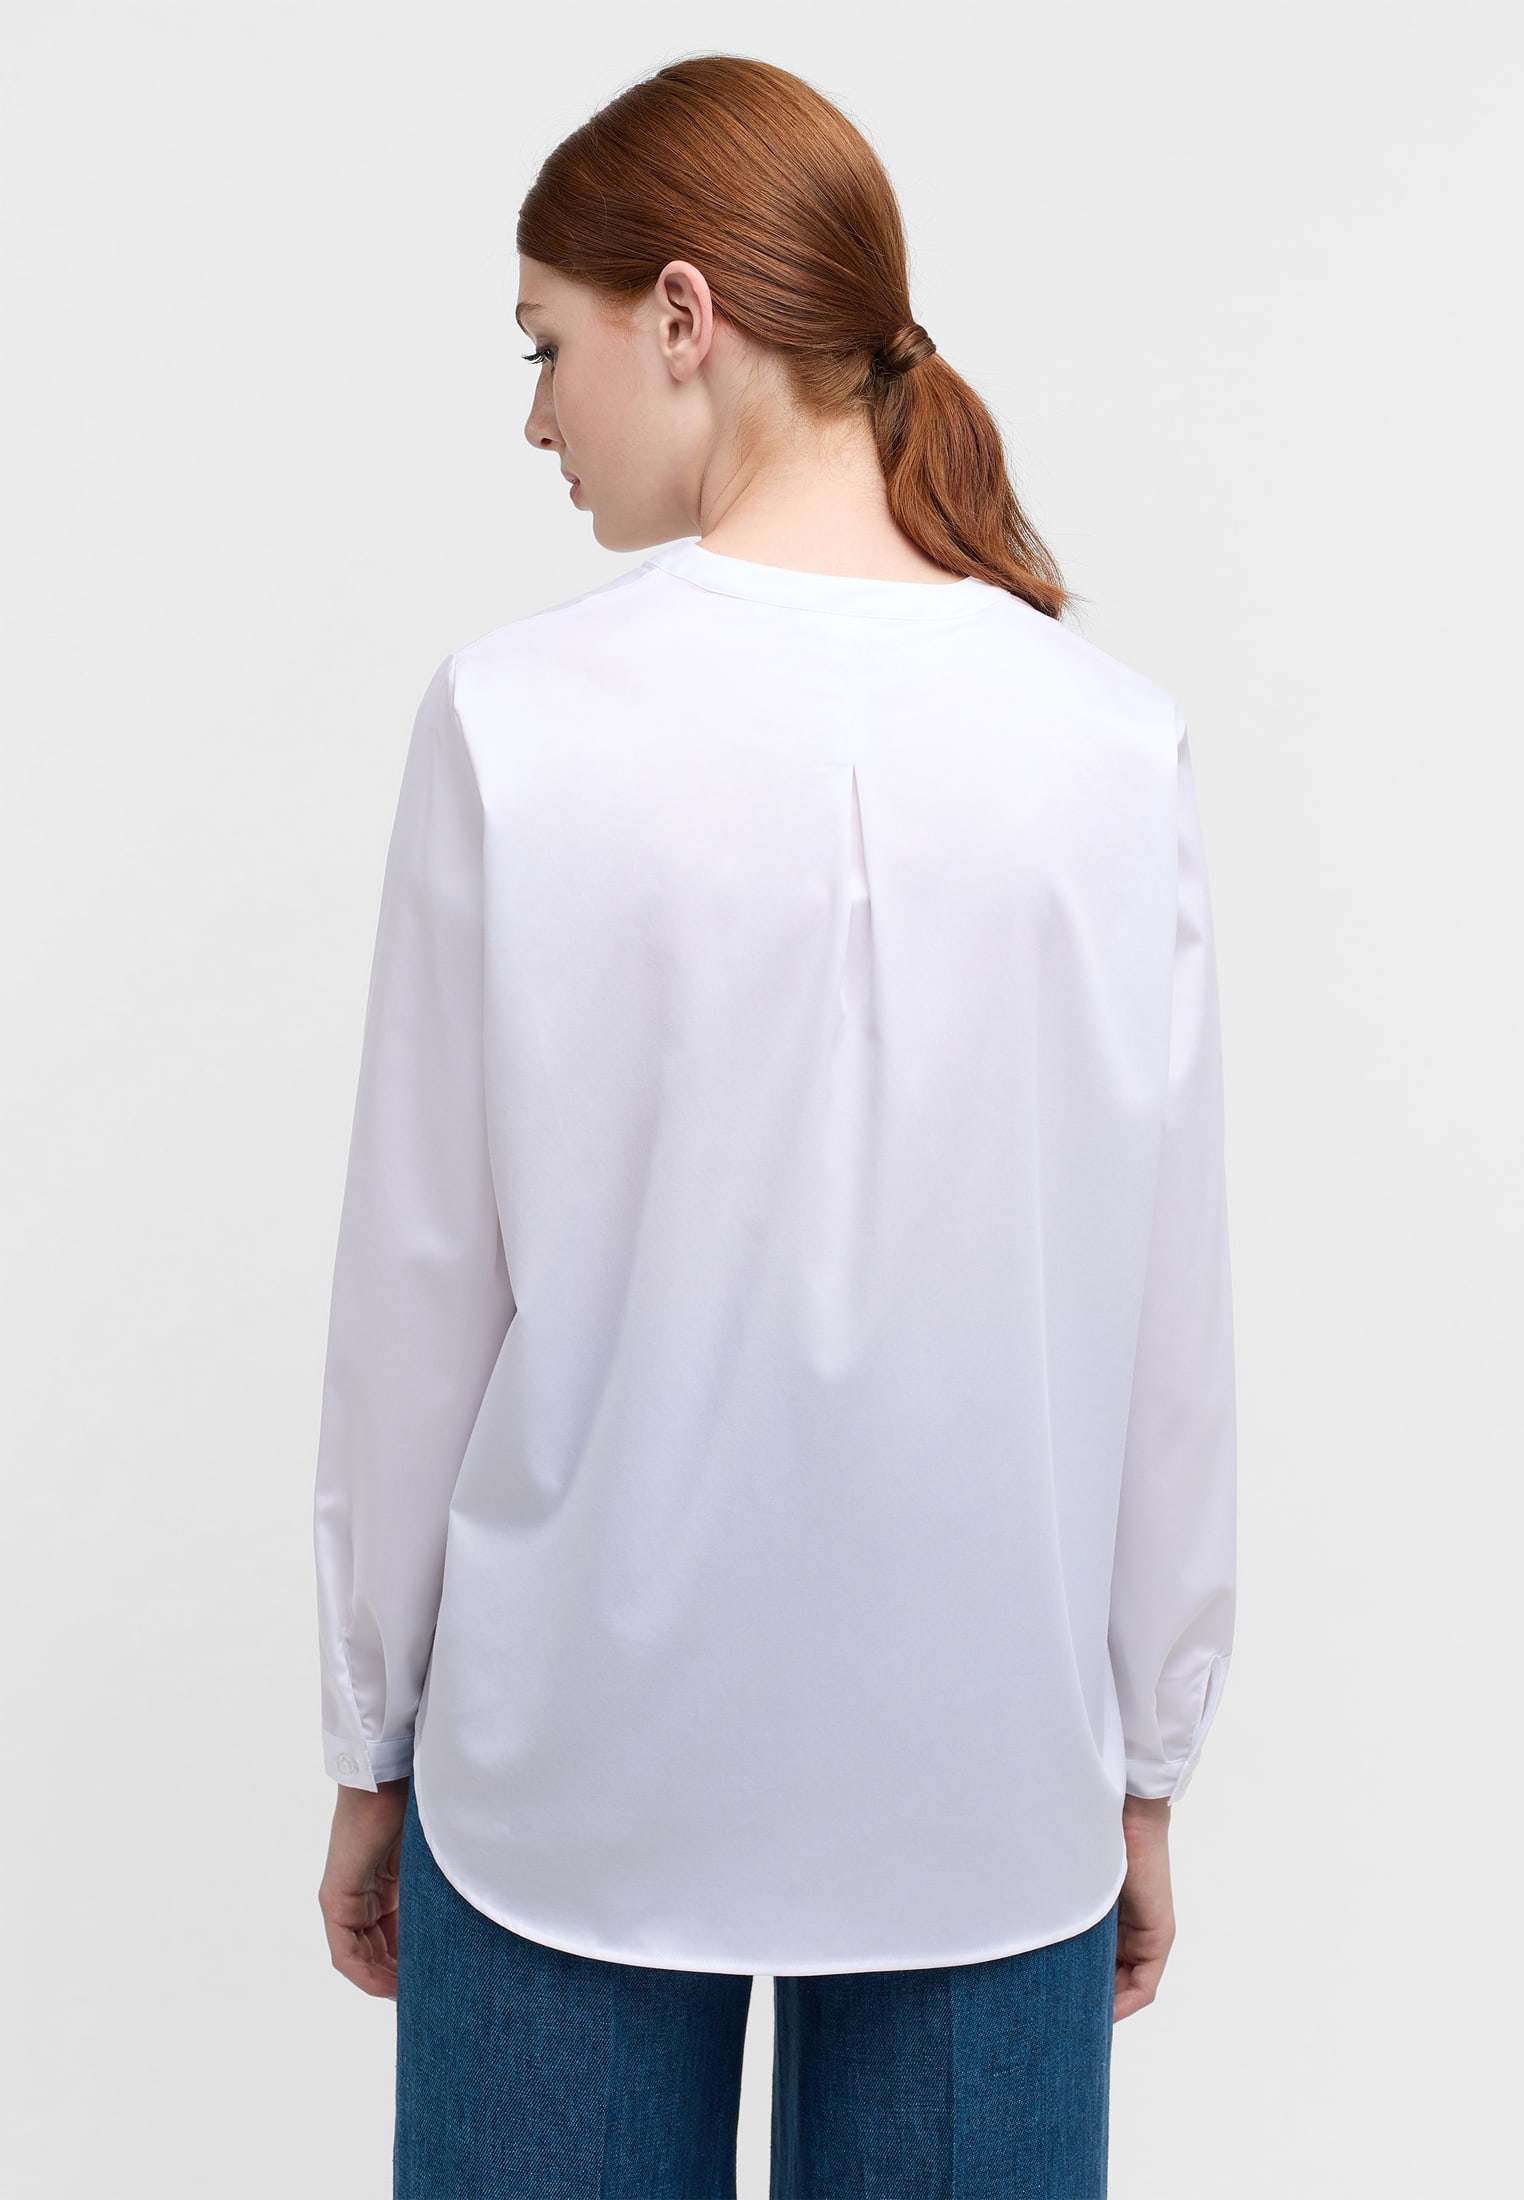 Satin Shirt Bluse in weiß unifarben | weiß | 44 | Langarm |  2BL00618-00-01-44-1/1